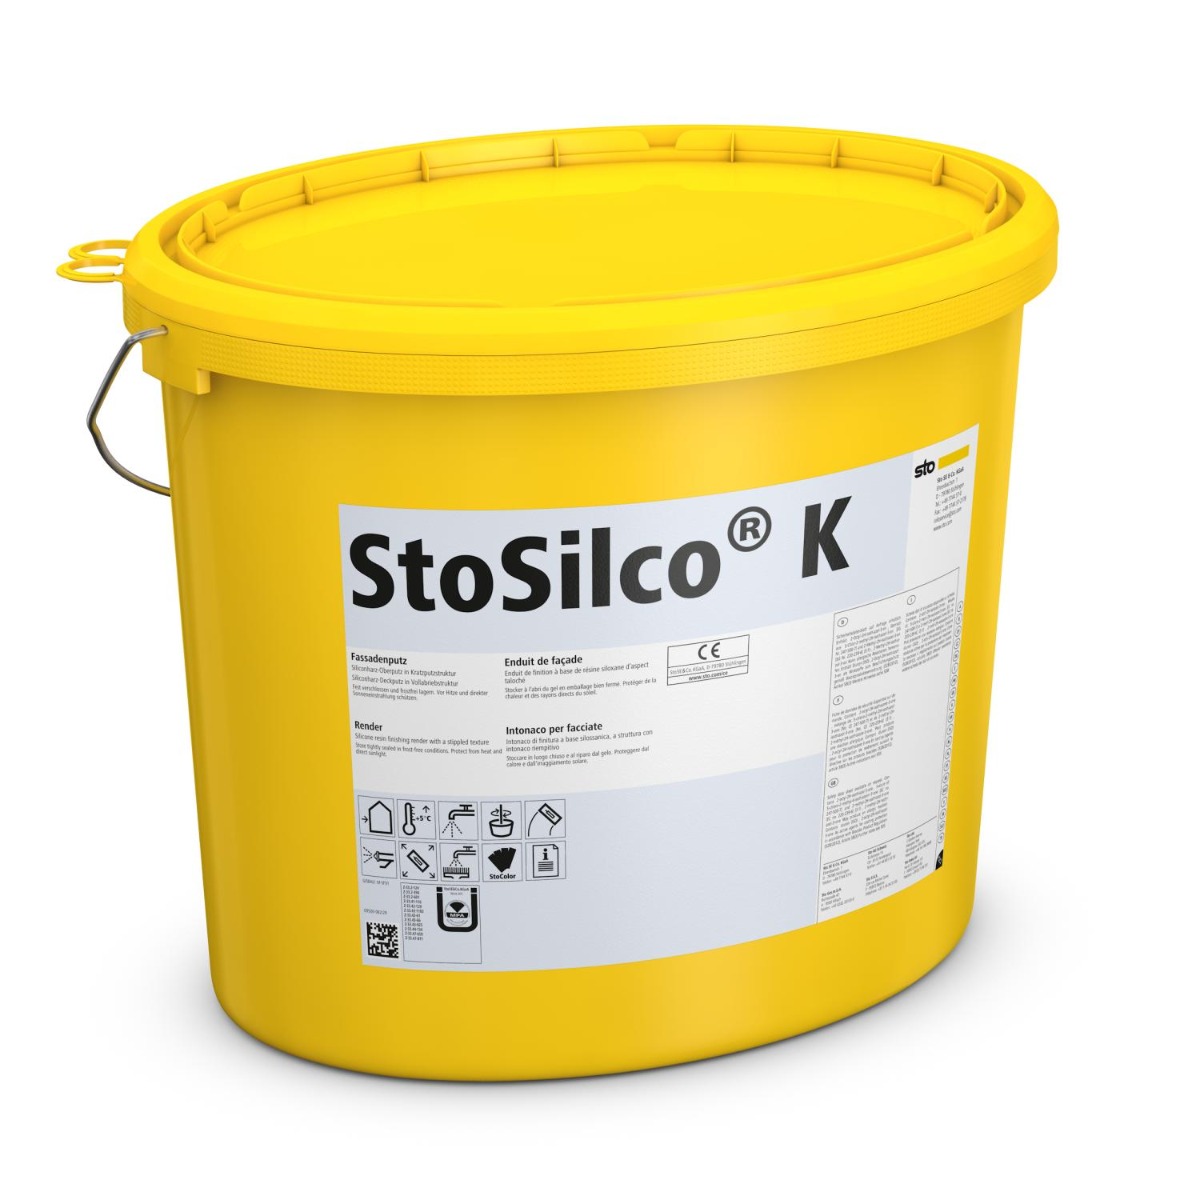 StoSilco K-25 kg Korn 1,0-Weiß